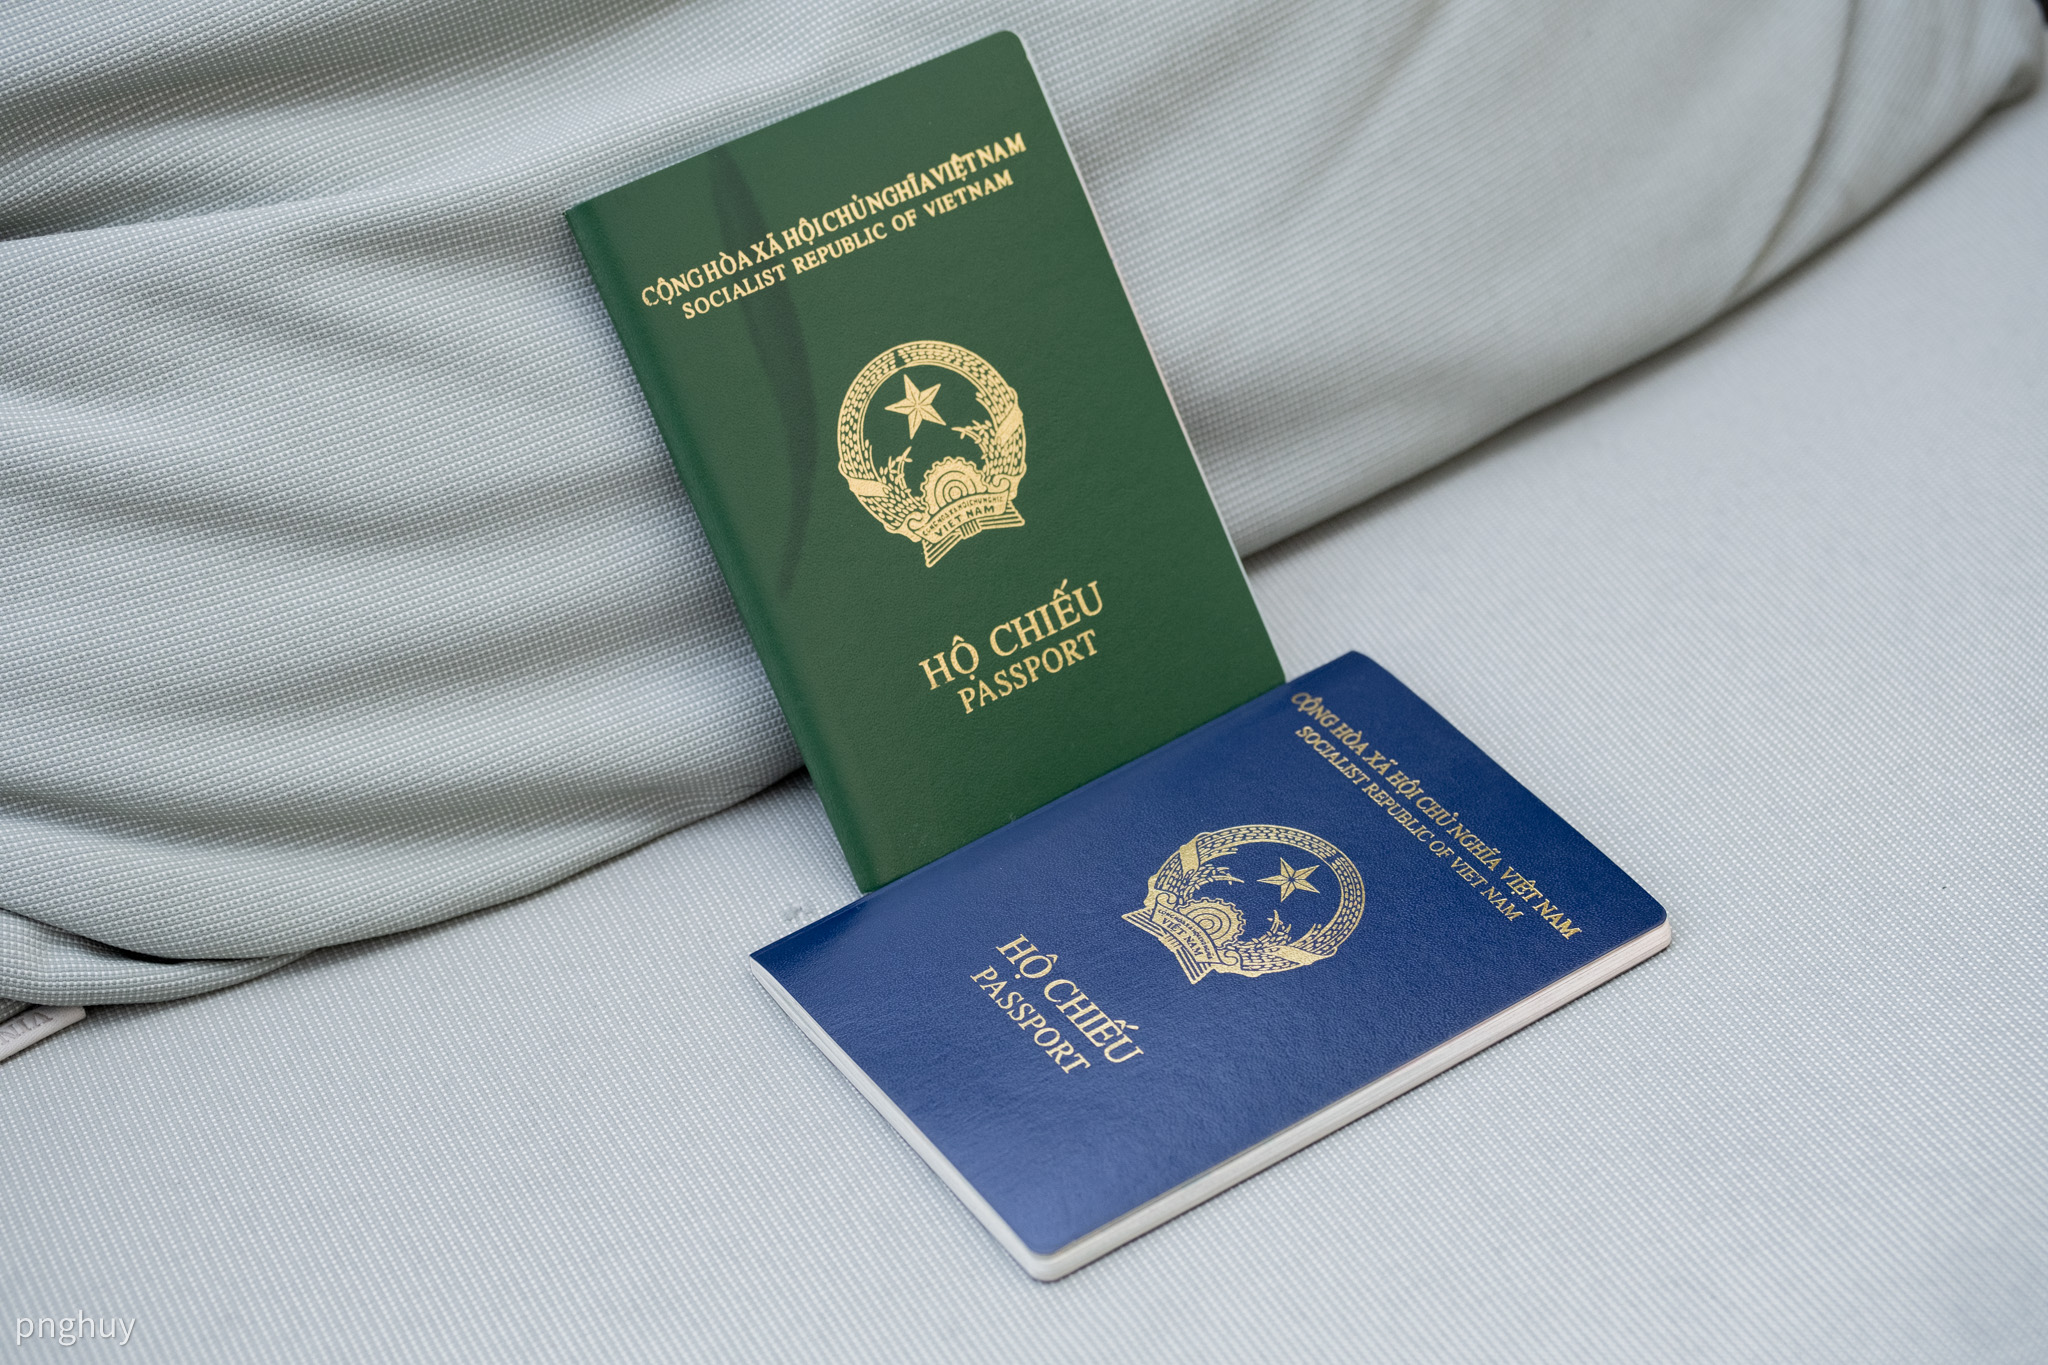 Anh quốc công nhận hộ chiếu mới của Việt Nam